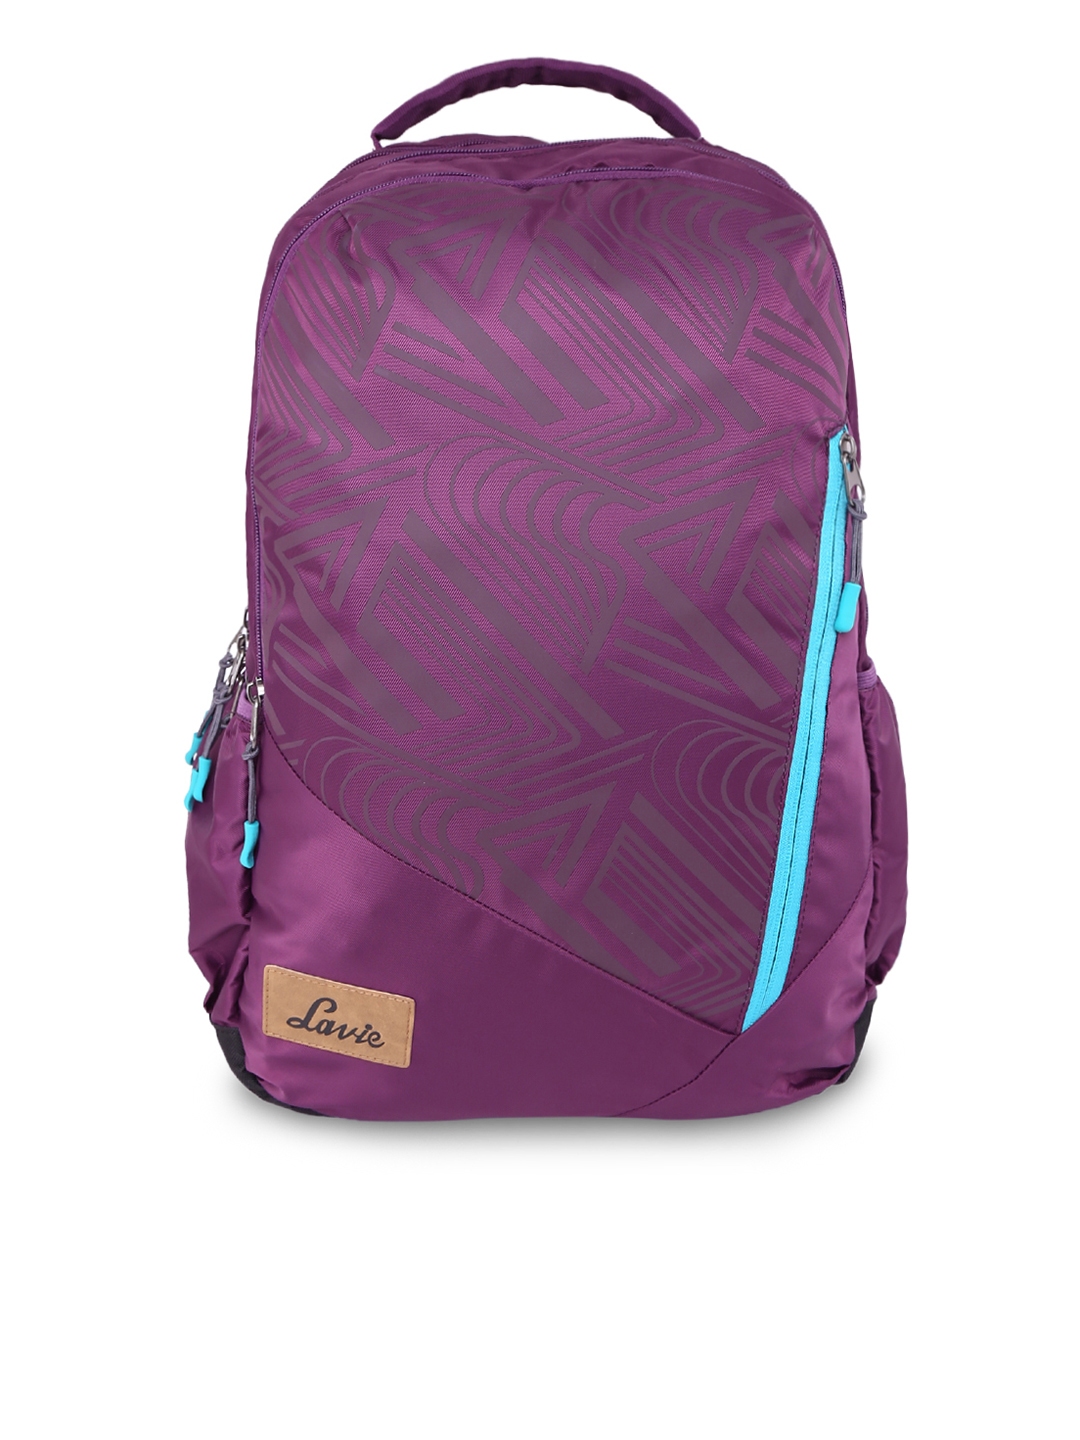 Top 143+ lavie school bags latest - xkldase.edu.vn